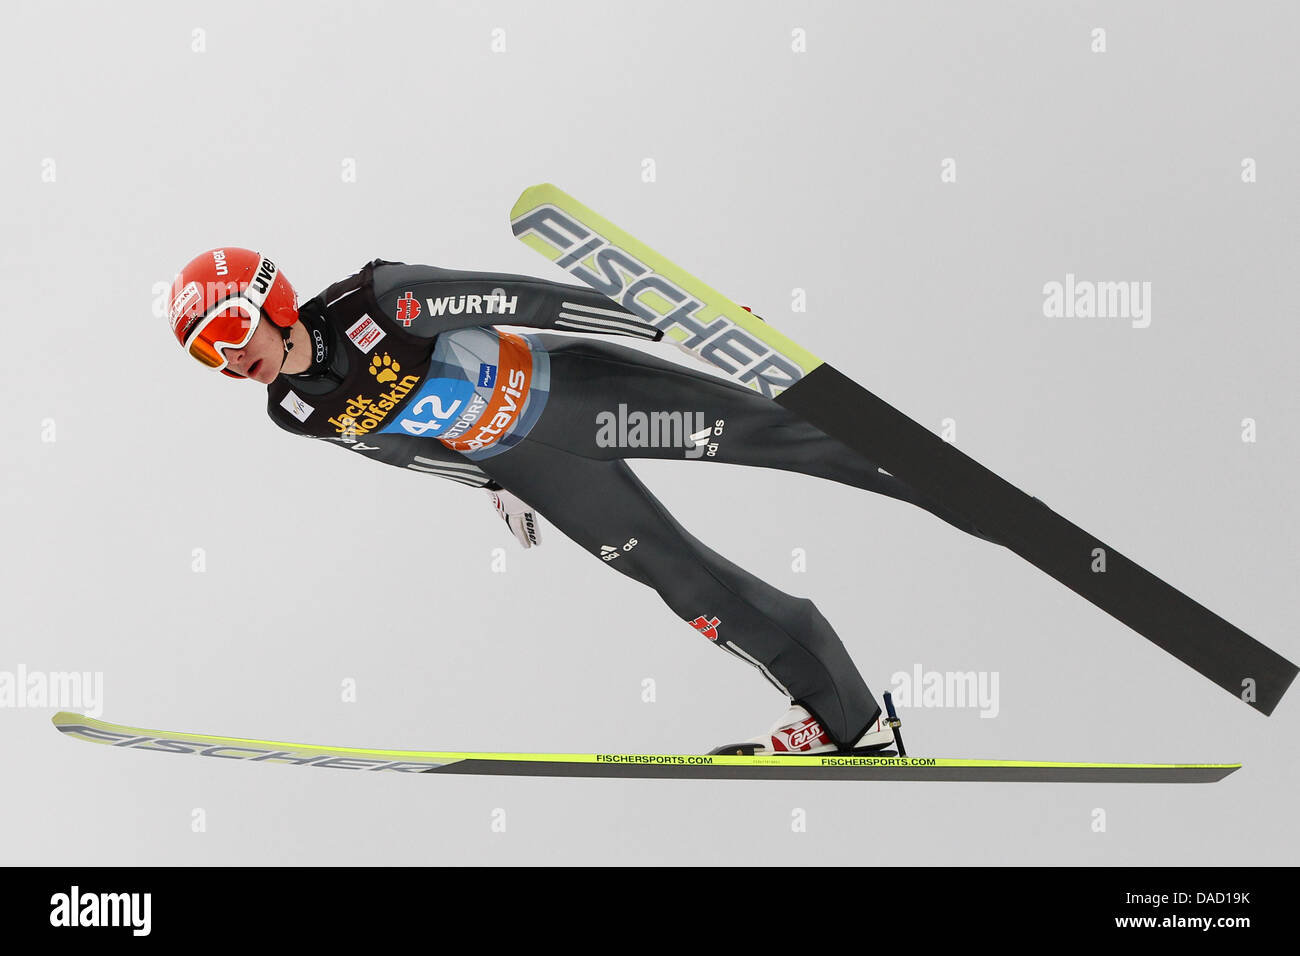 Puente de esquí alemán Richard Freitag toma un salto en la formación de saltos de esquí Schattenberg durante el sexagésimo cuatro colinas Torneo en Obertsdorf, Alemania, el 30 de diciembre de 2011. Foto: Daniel Karmann Foto de stock